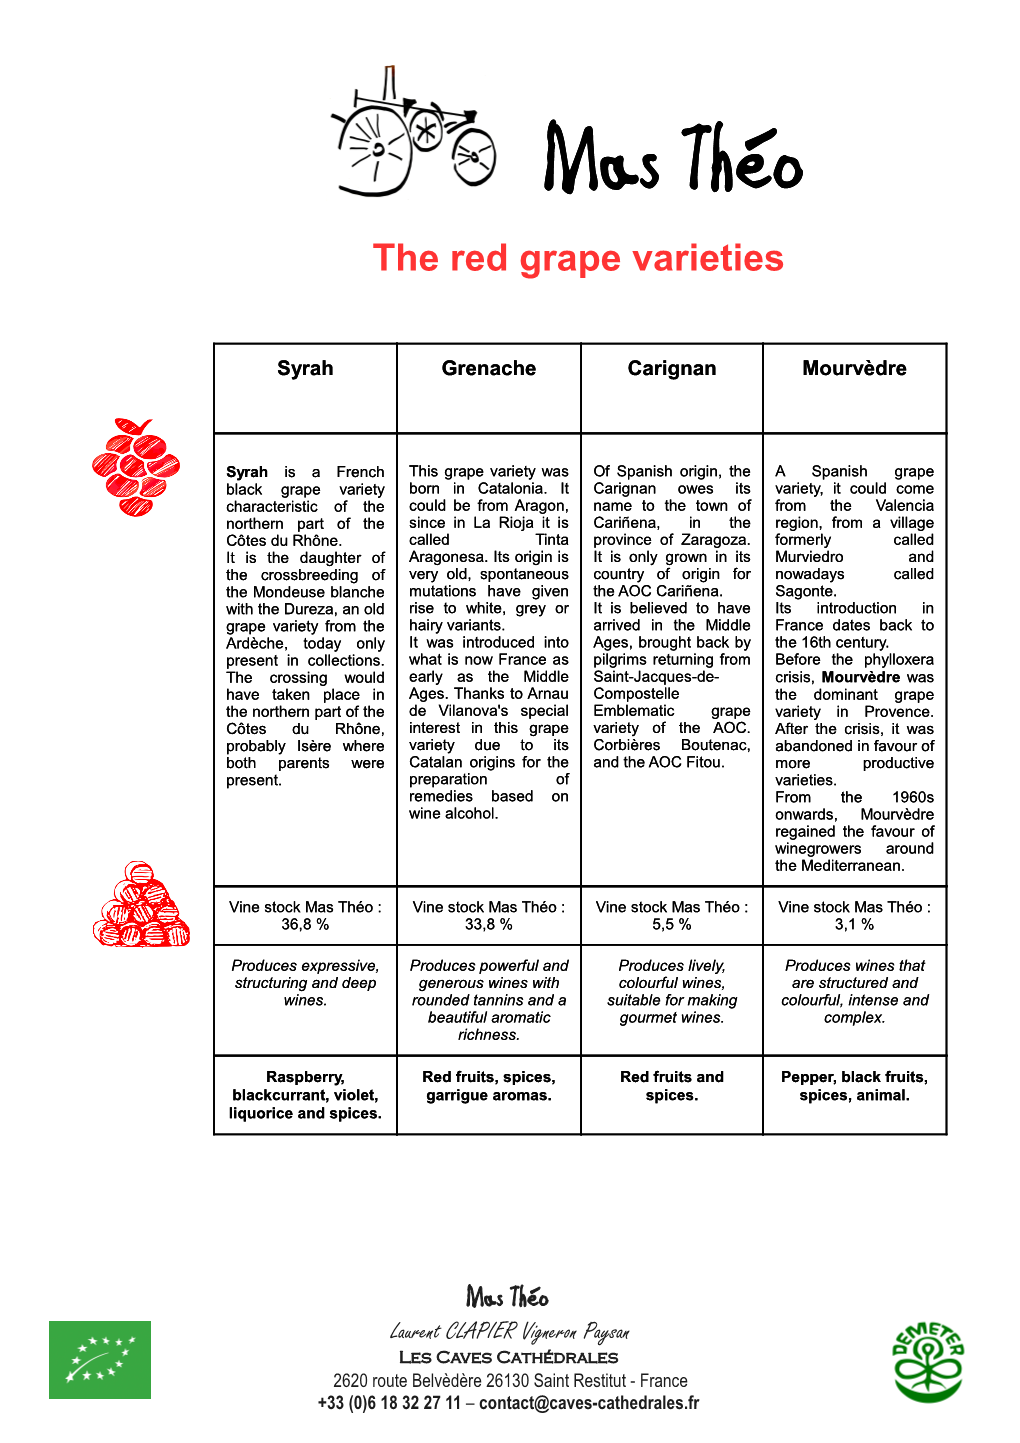 The Red Grape Varieties